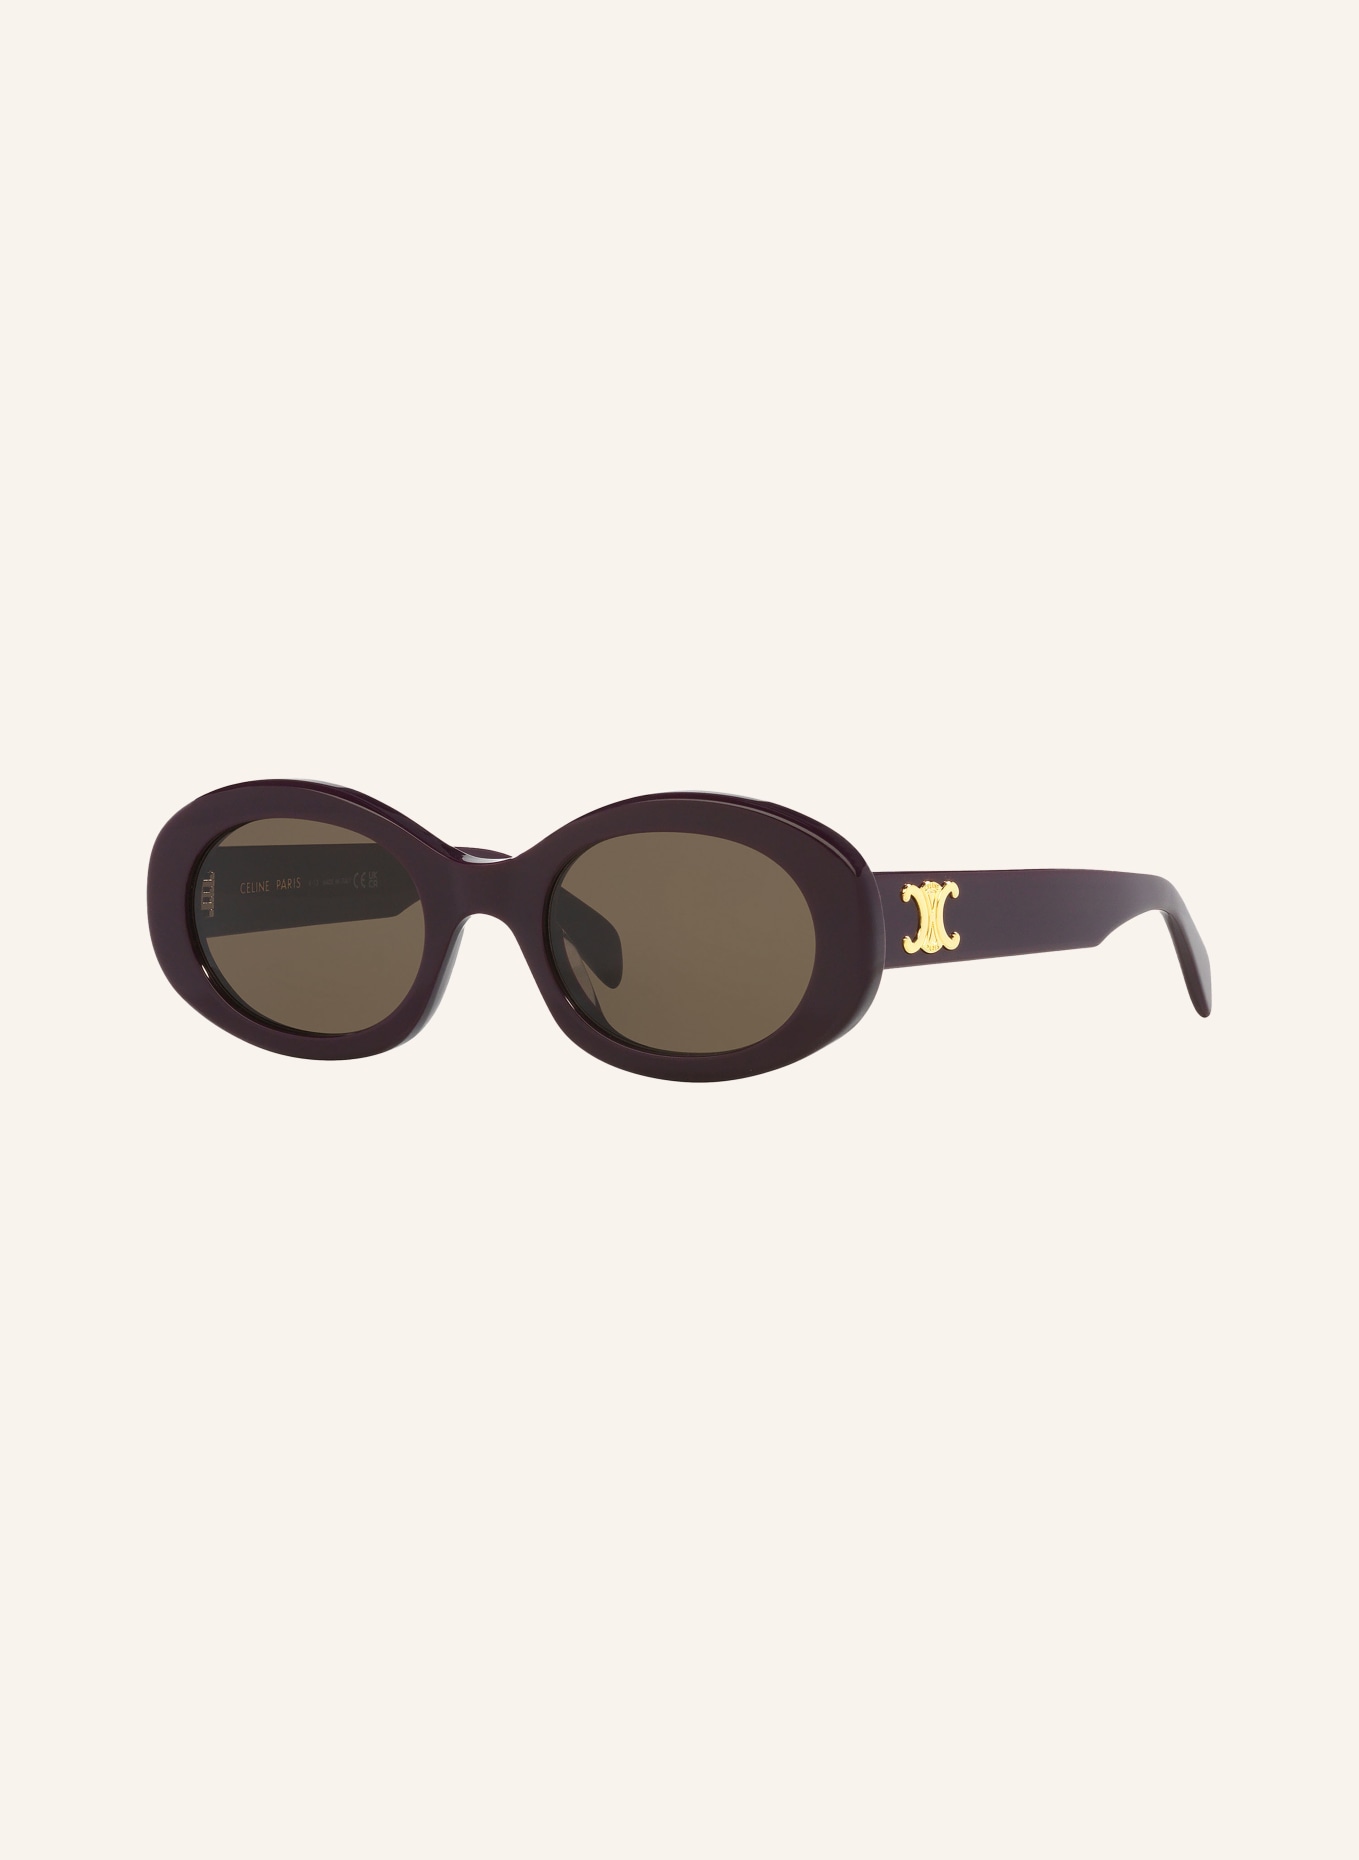 CELINE Sunglasses CL000430 TRIOMPHE, Color: 3700D1 - PURPLE/BROWN (Image 1)